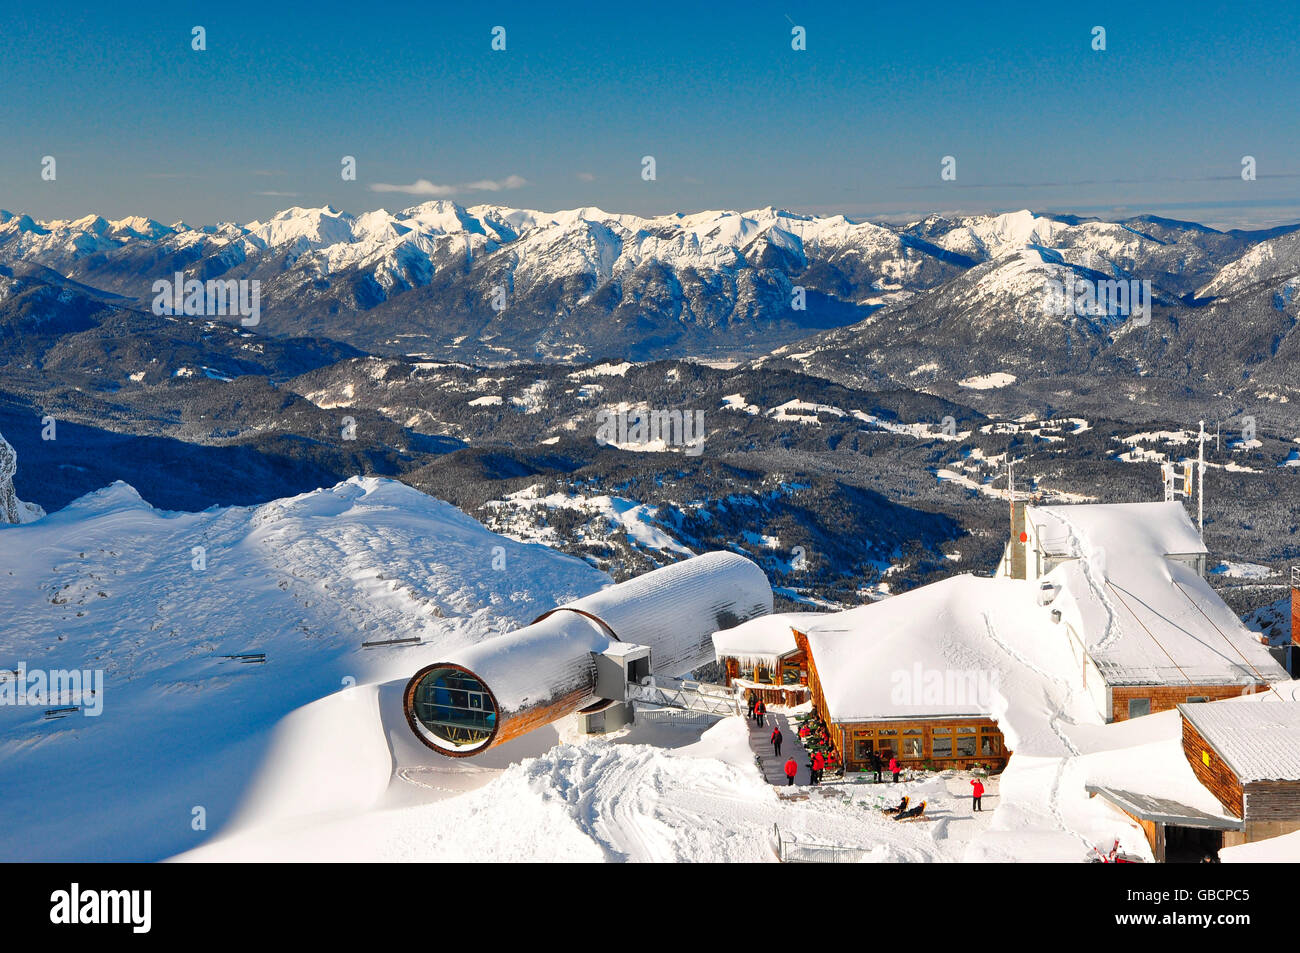 Summit station, auberge de montagne, Alpes, vallée de l'Isar, pic du Karwendel, Mittenwald, Upper Bavaria, Bavaria, Germany Banque D'Images